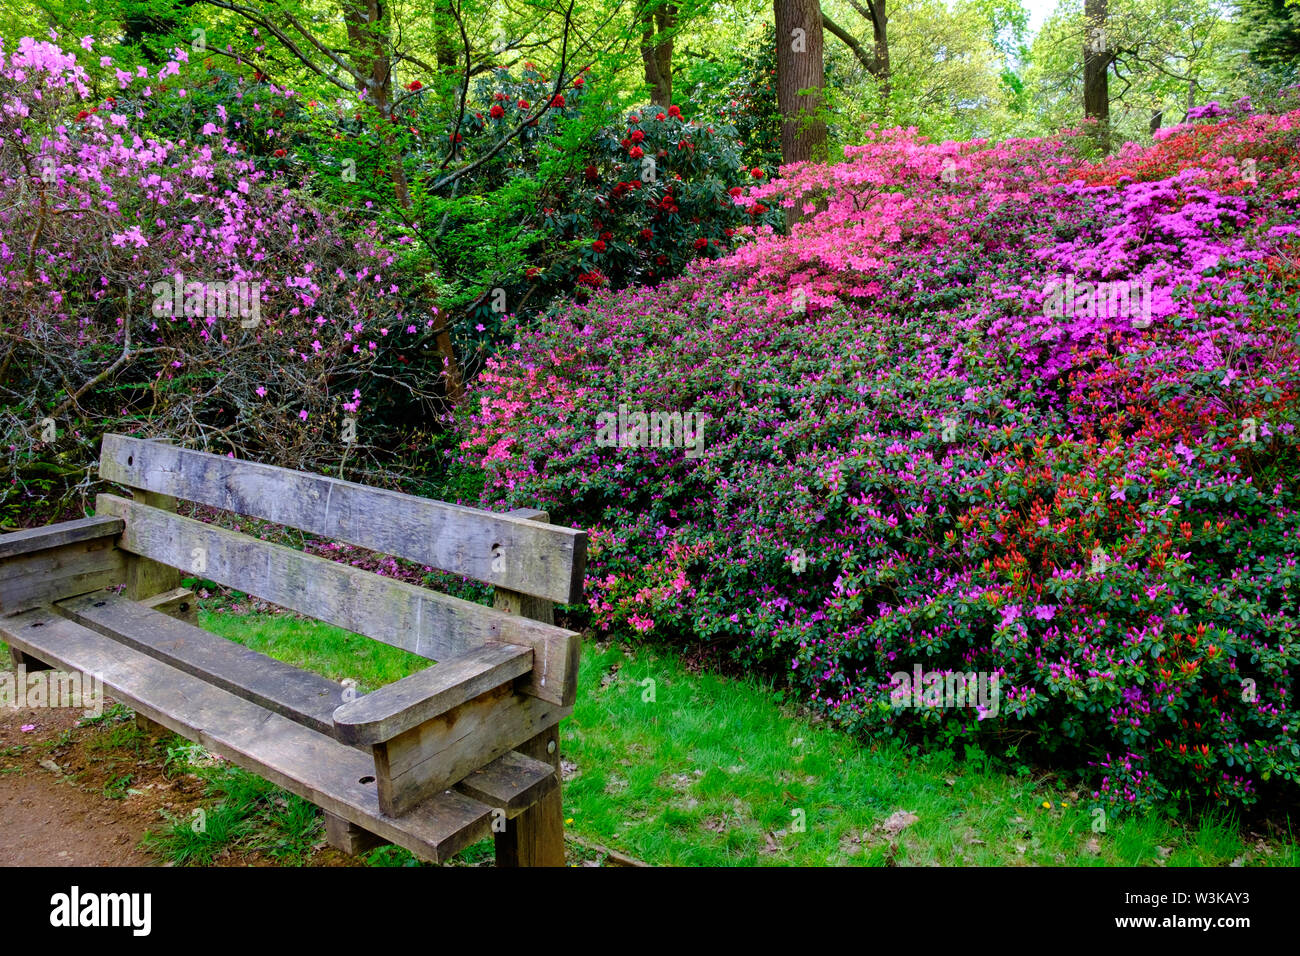 Un banc en bois et les buissons de rose et mauve fleurs de printemps, Isabella Plantation, Richmond Park, Surrey, Angleterre, Royaume-Uni Banque D'Images